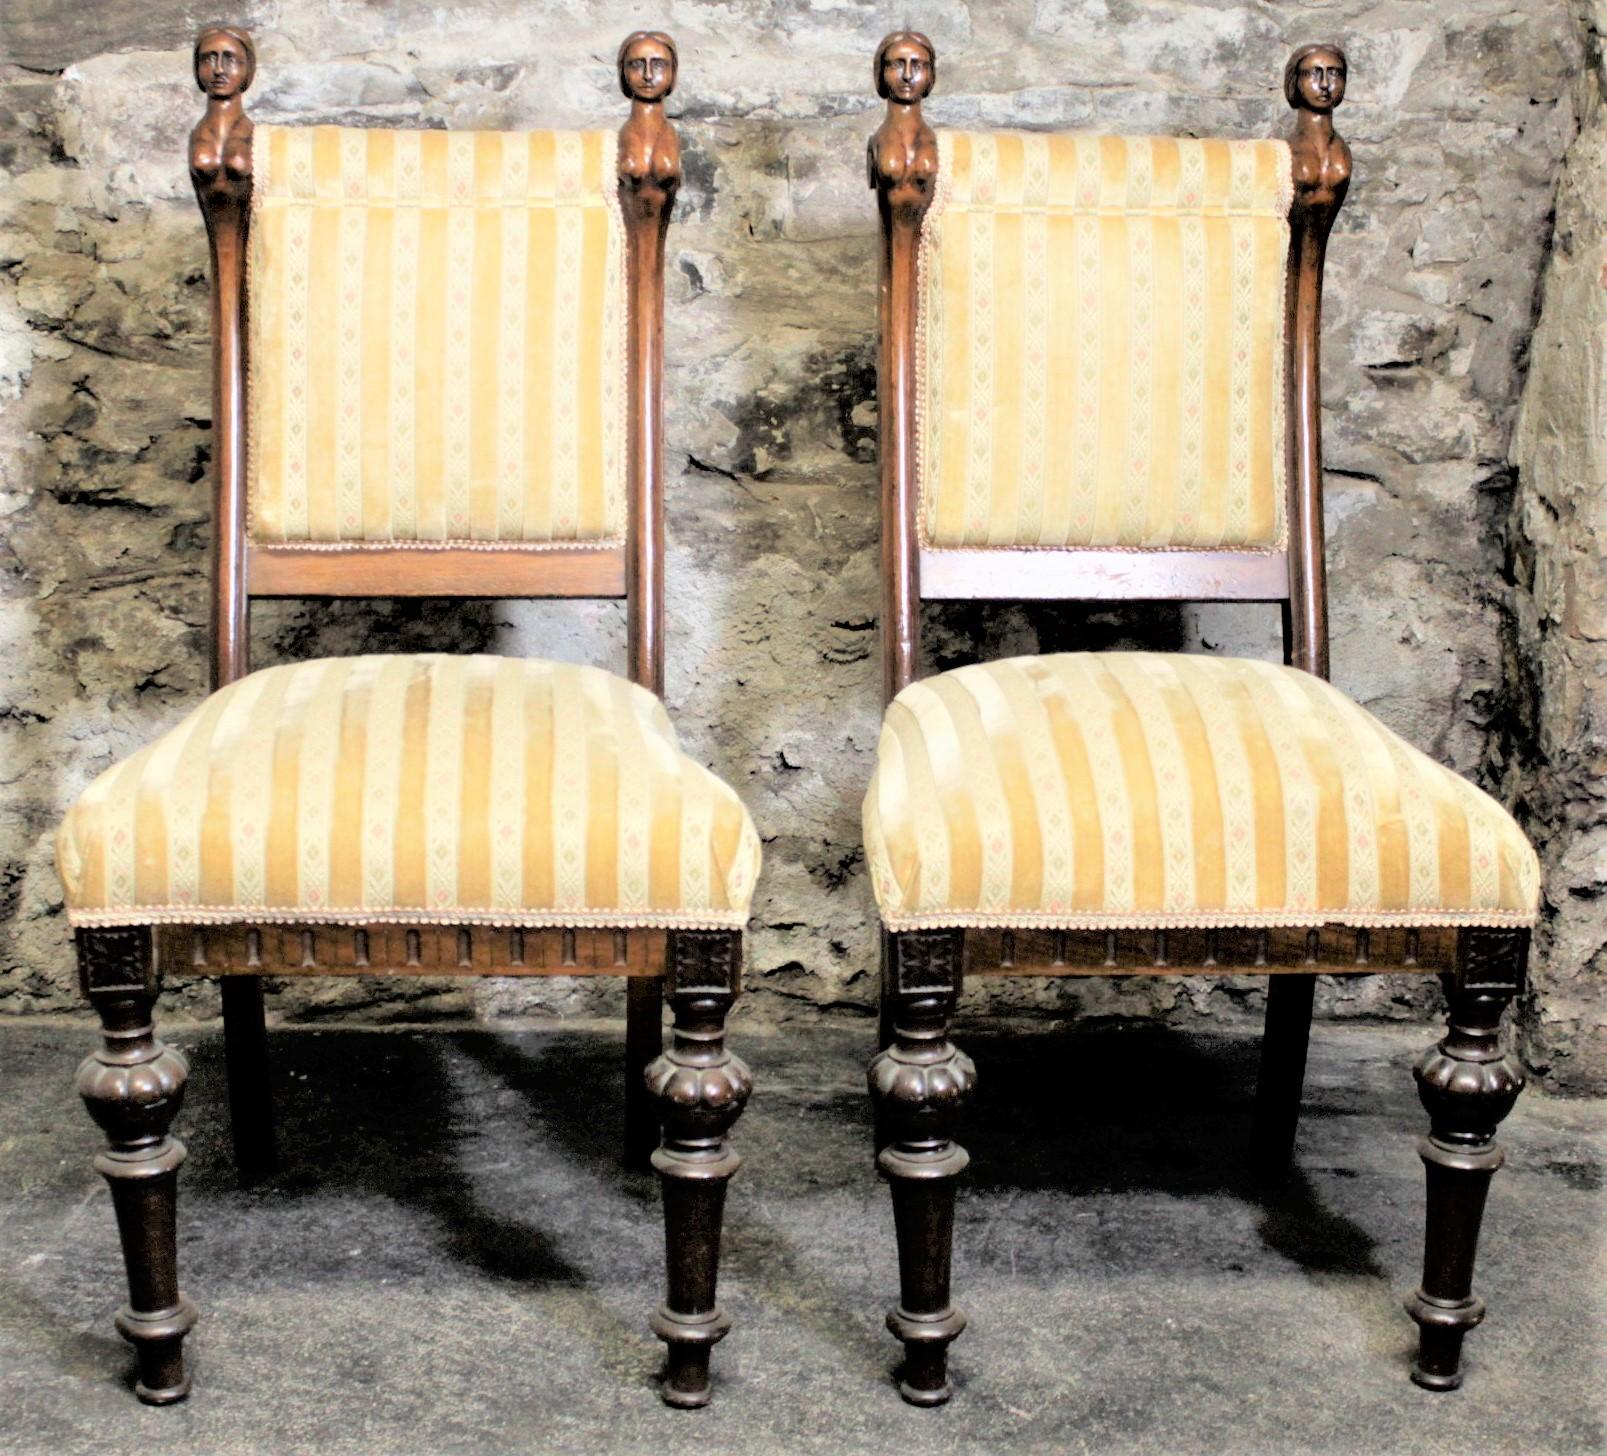 Cette paire de chaises anciennes n'est pas signée mais on pense qu'elle a été fabriquée aux États-Unis vers 1880 dans le style victorien. Les chaises ont des cadres en bois sculptés à la main et présentent deux femmes sculptées en buste avec des